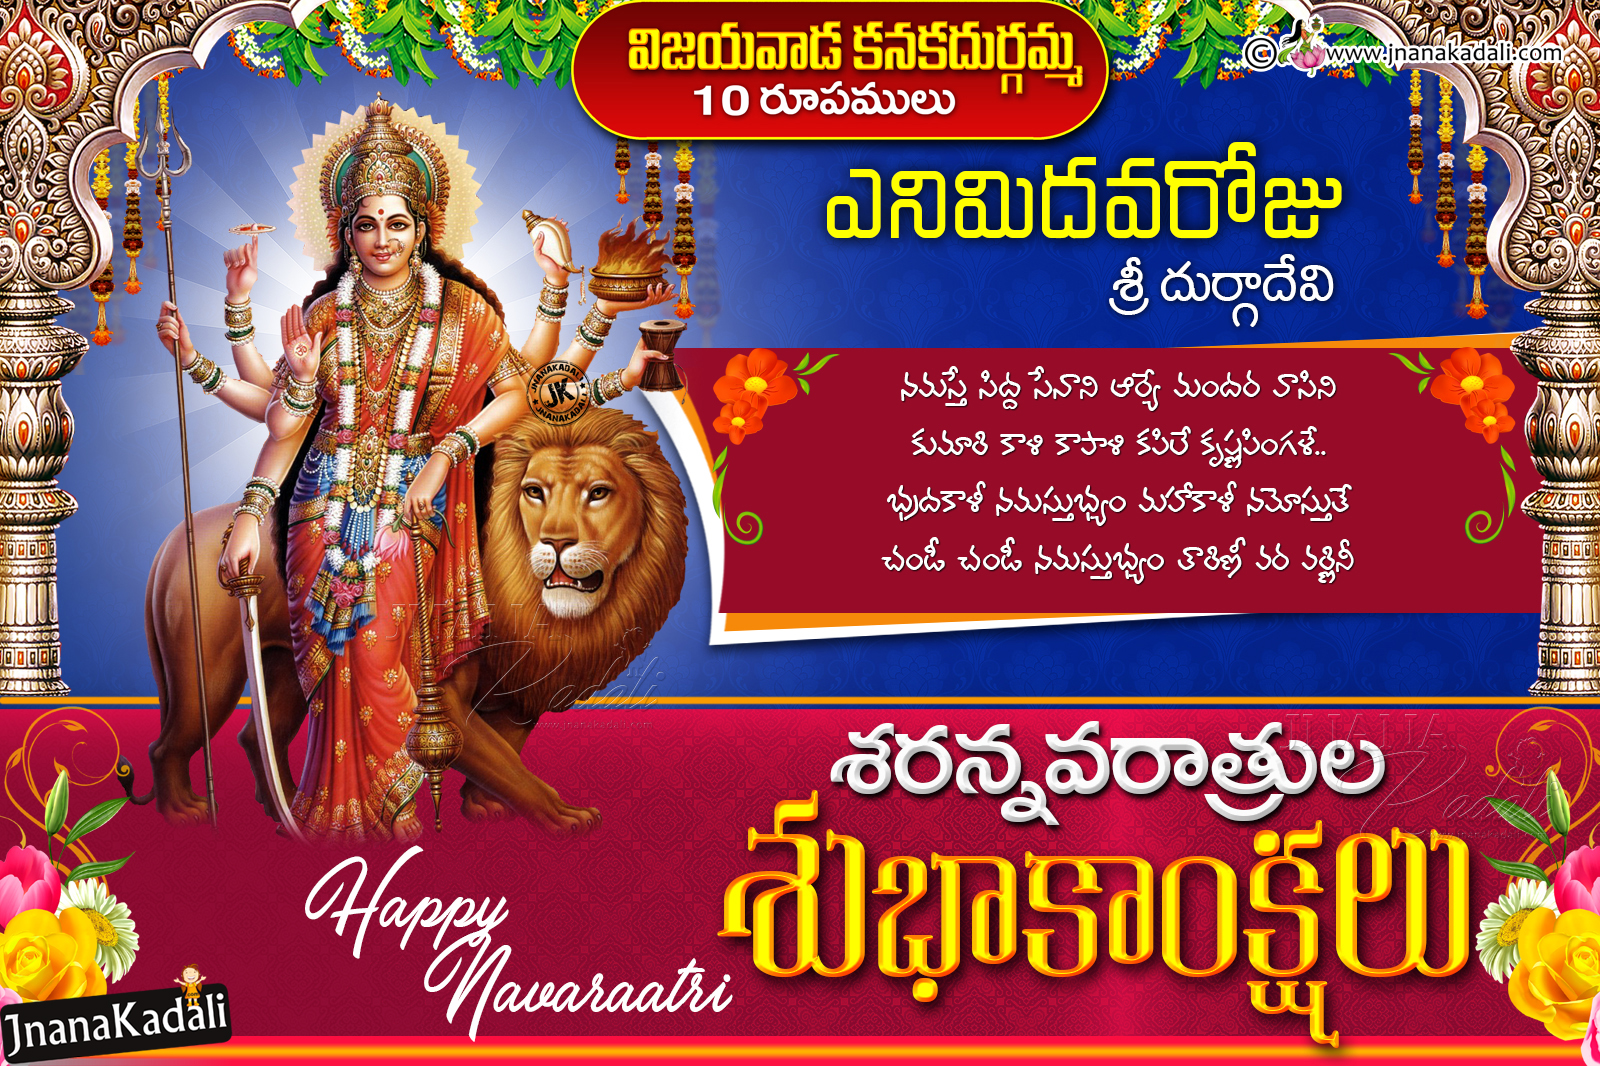 Vijayawada kanakadurgamma 10 Roopamulu-8th Day Sri Durga ...